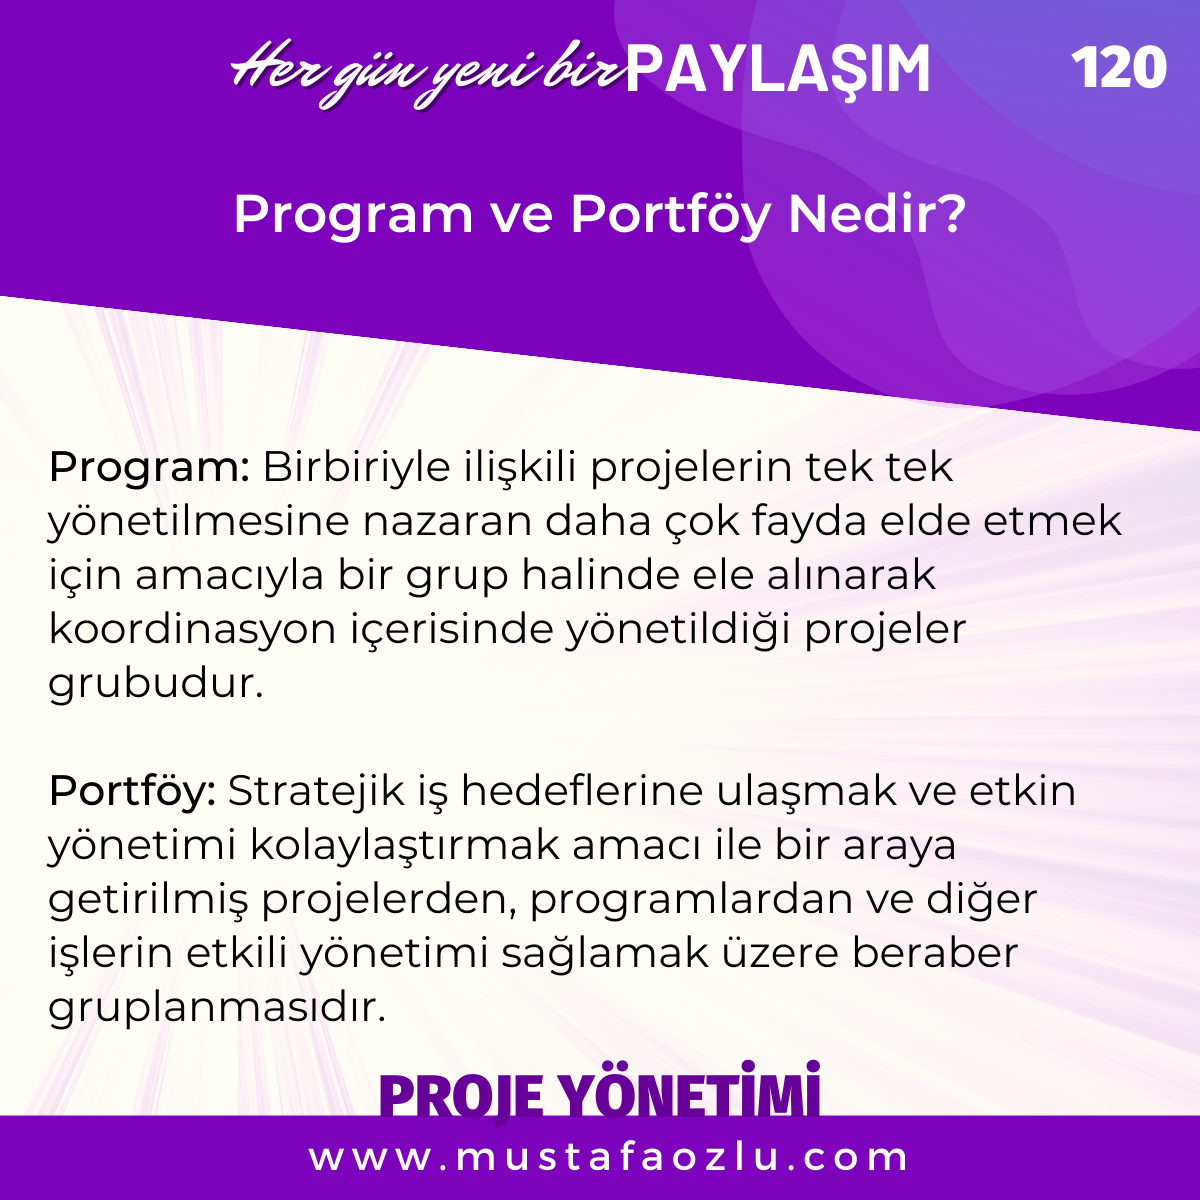 Program ve Portföy Nedir? - Mustafa ÖZLÜ